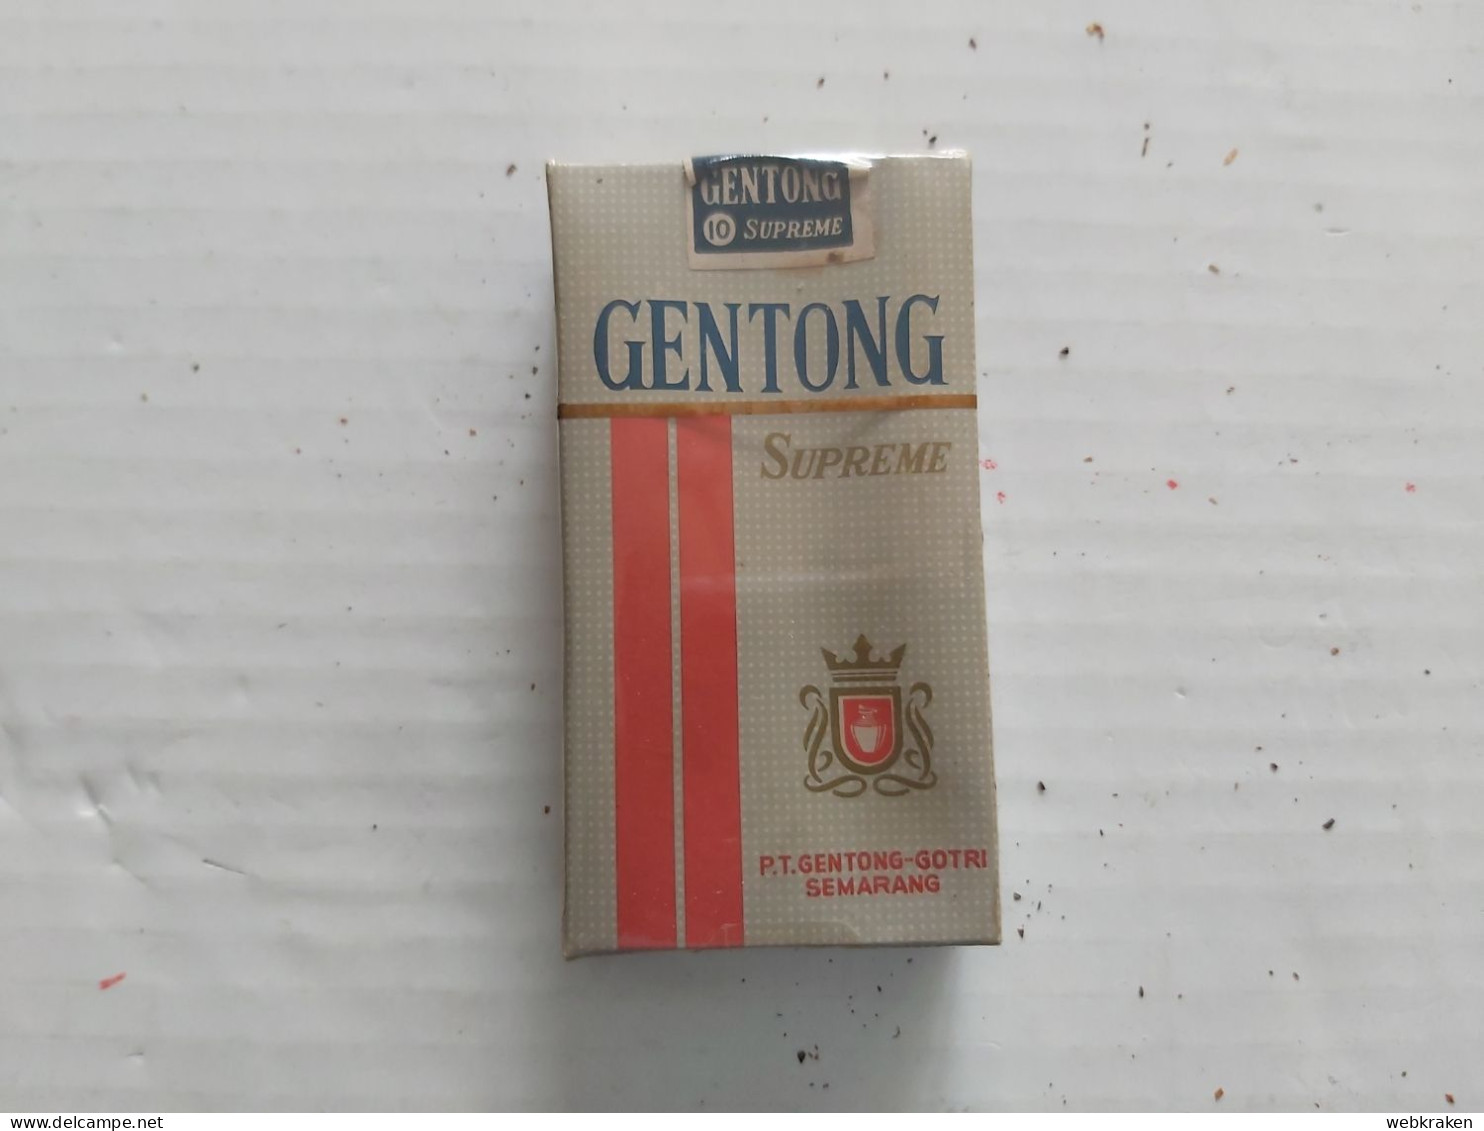 PACCHETTO SIGARETTE PIENO TABACCO FUMO TABACS WITH ORIGINAL CIGARETTES TOBACCO MARCA GENTONG INDONESIA CON SIGARETTE - Cigarette Holders